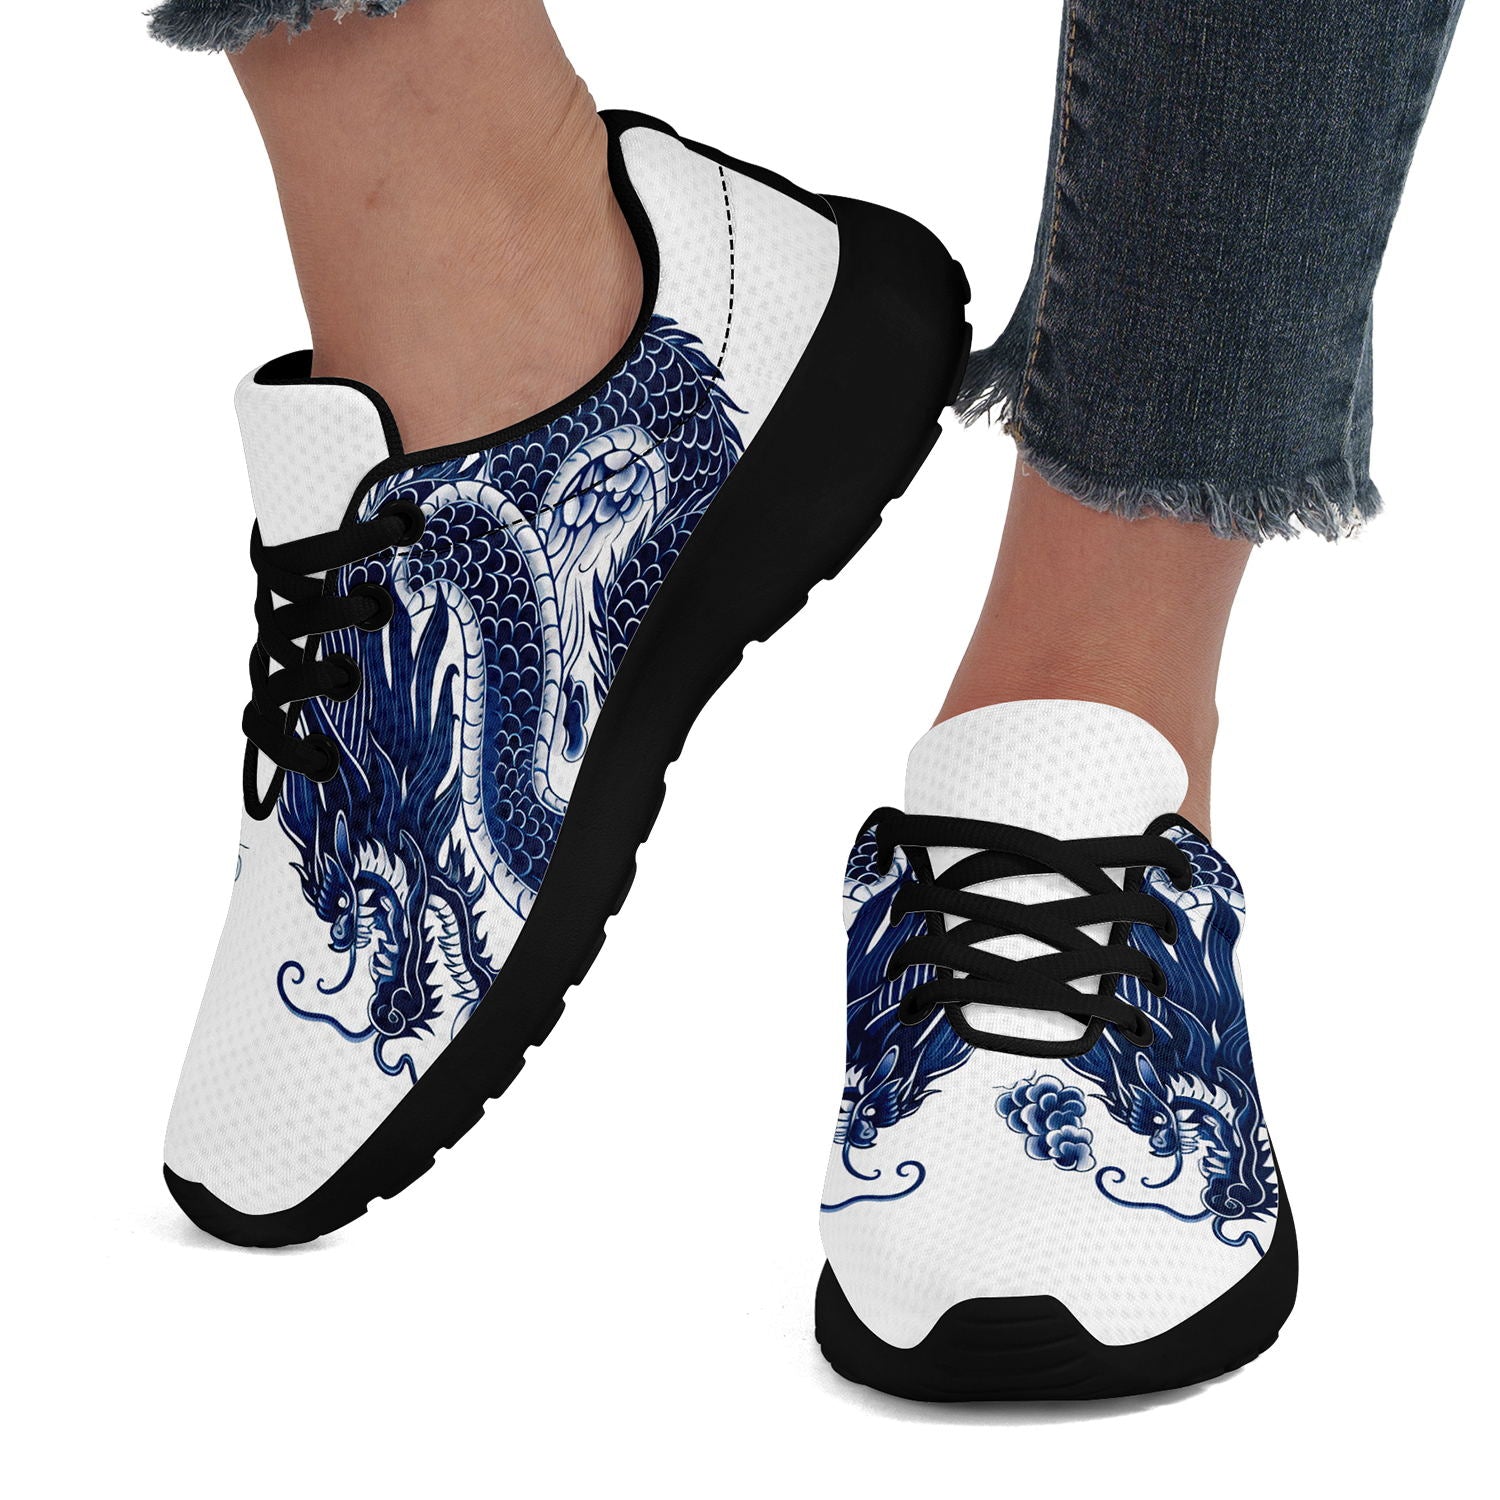 柔性定制打印个性化设计中国龙文化运动鞋蓝色黑底067-24025004_7